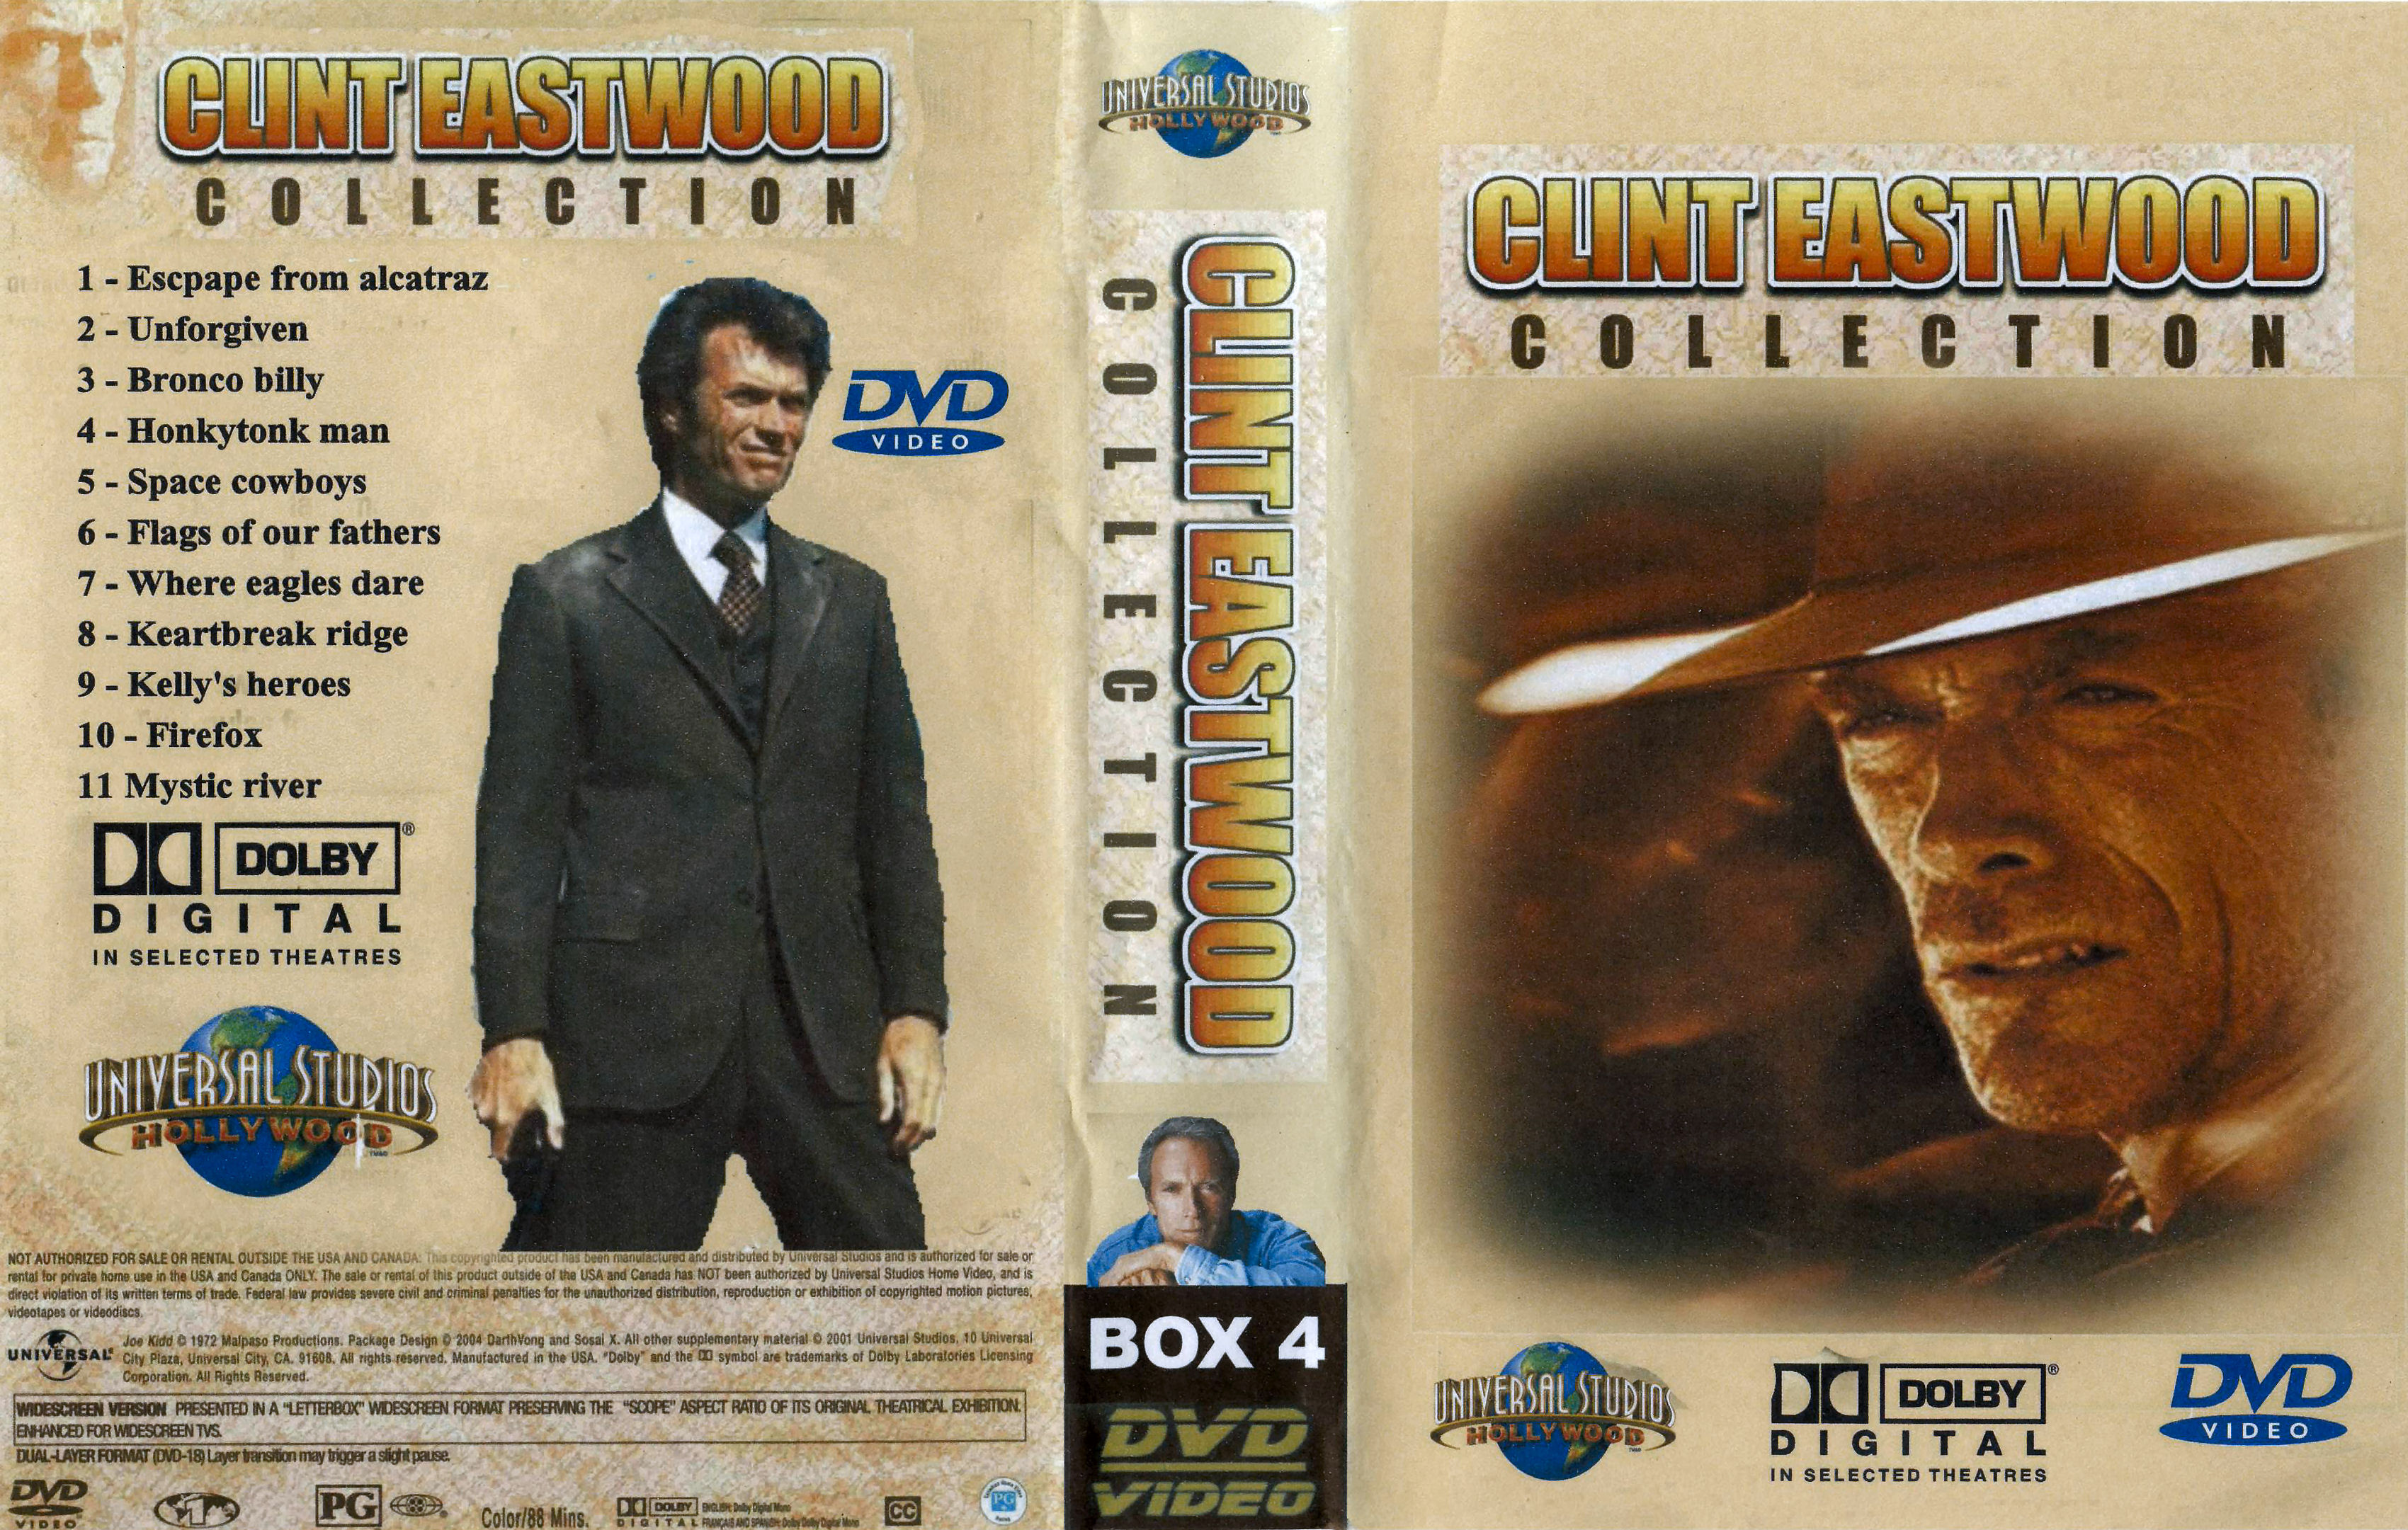 Clint Eastwood Collectie Box 4 DvD 4 van 10